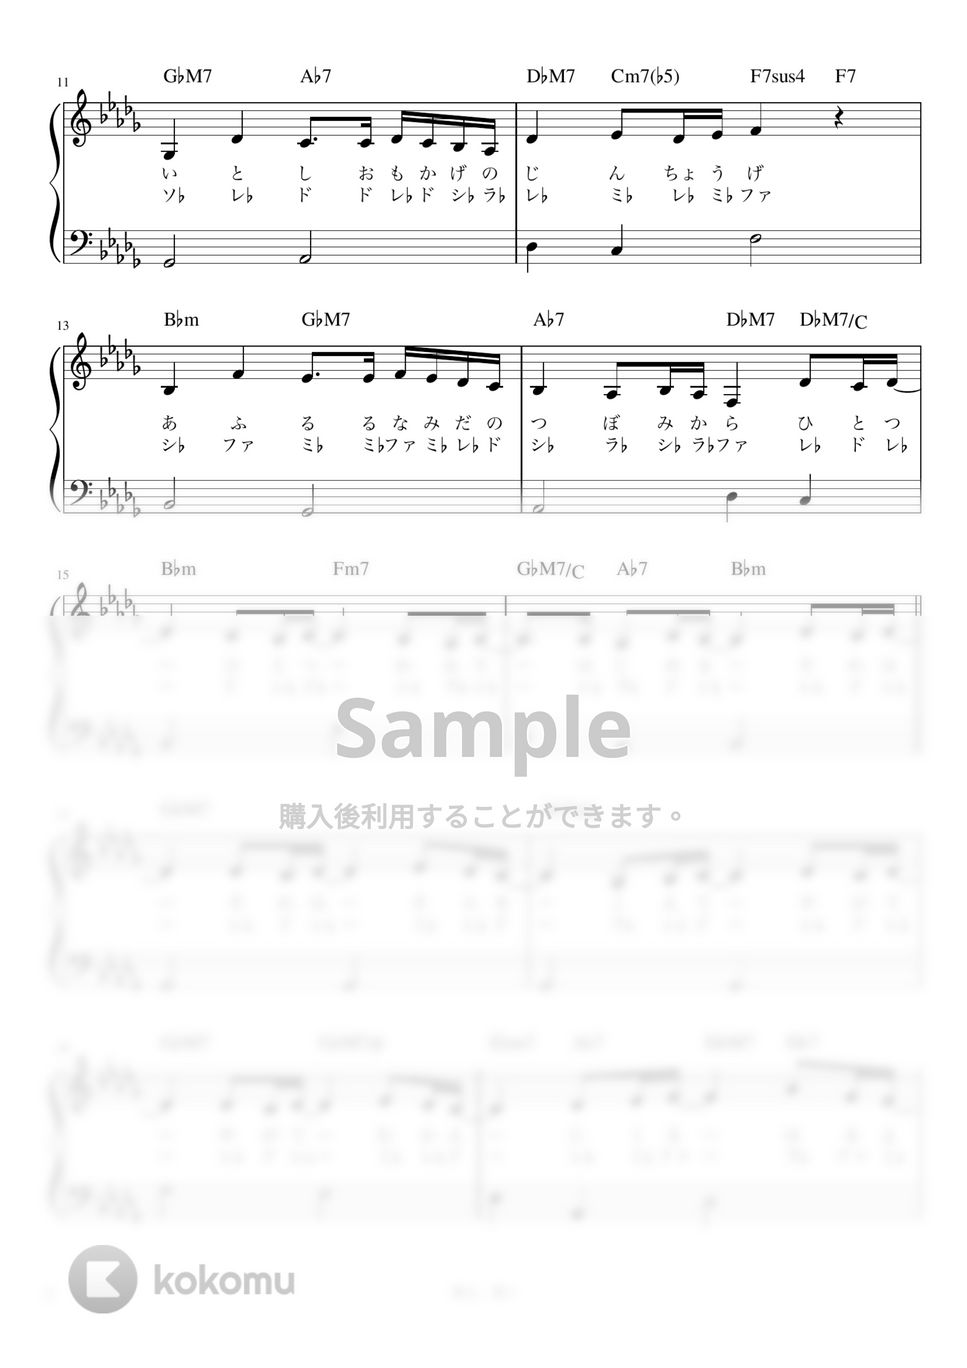 松任谷 由実 - 春よ、来い (かんたん / 歌詞付き / ドレミ付き / 初心者) by piano.tokyo